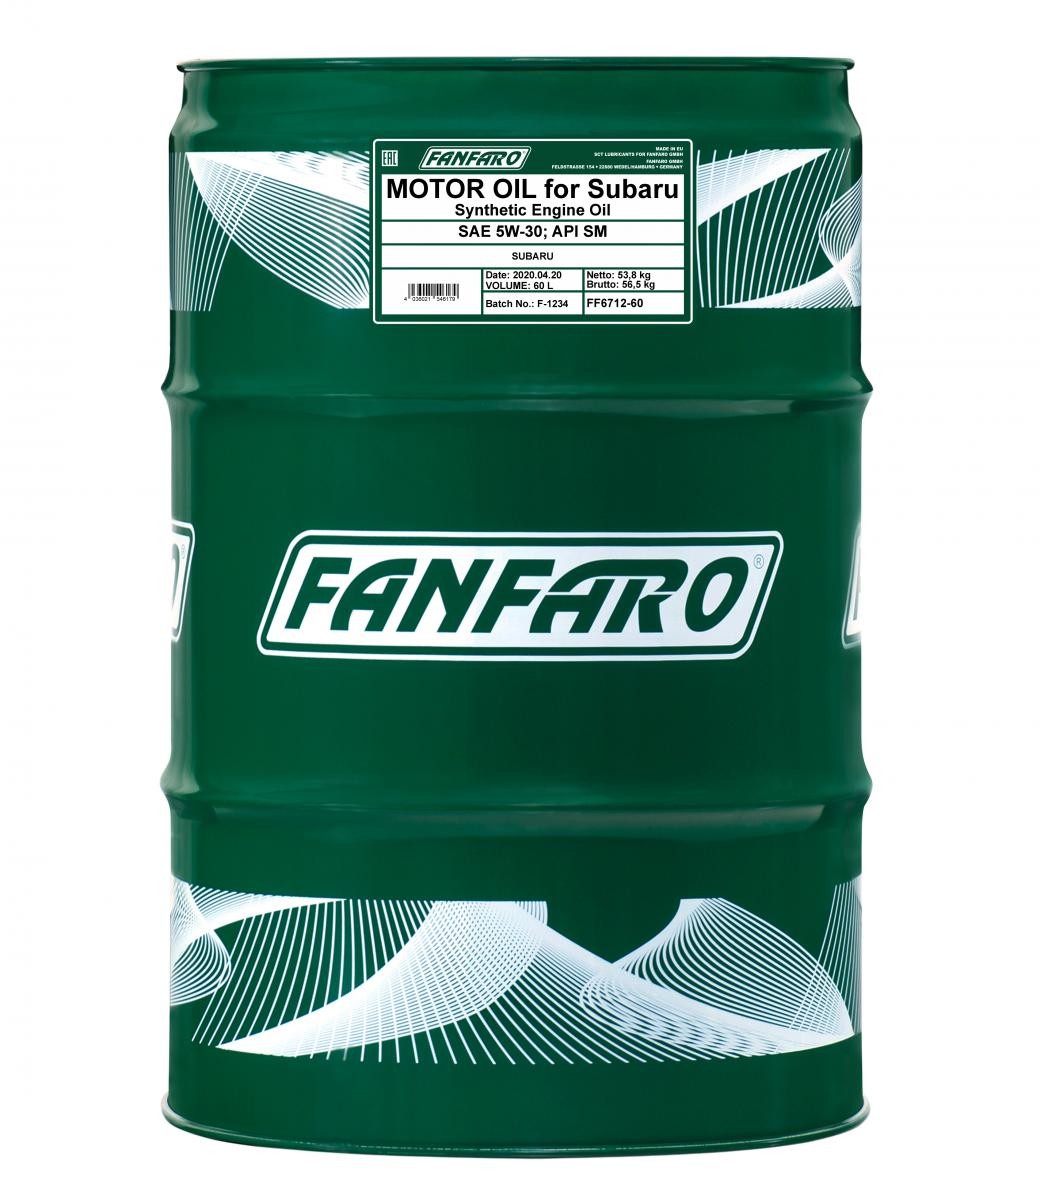 Car oil FANFARO 5W-30, 60l, Synthetic Oil longlife FF6712-60